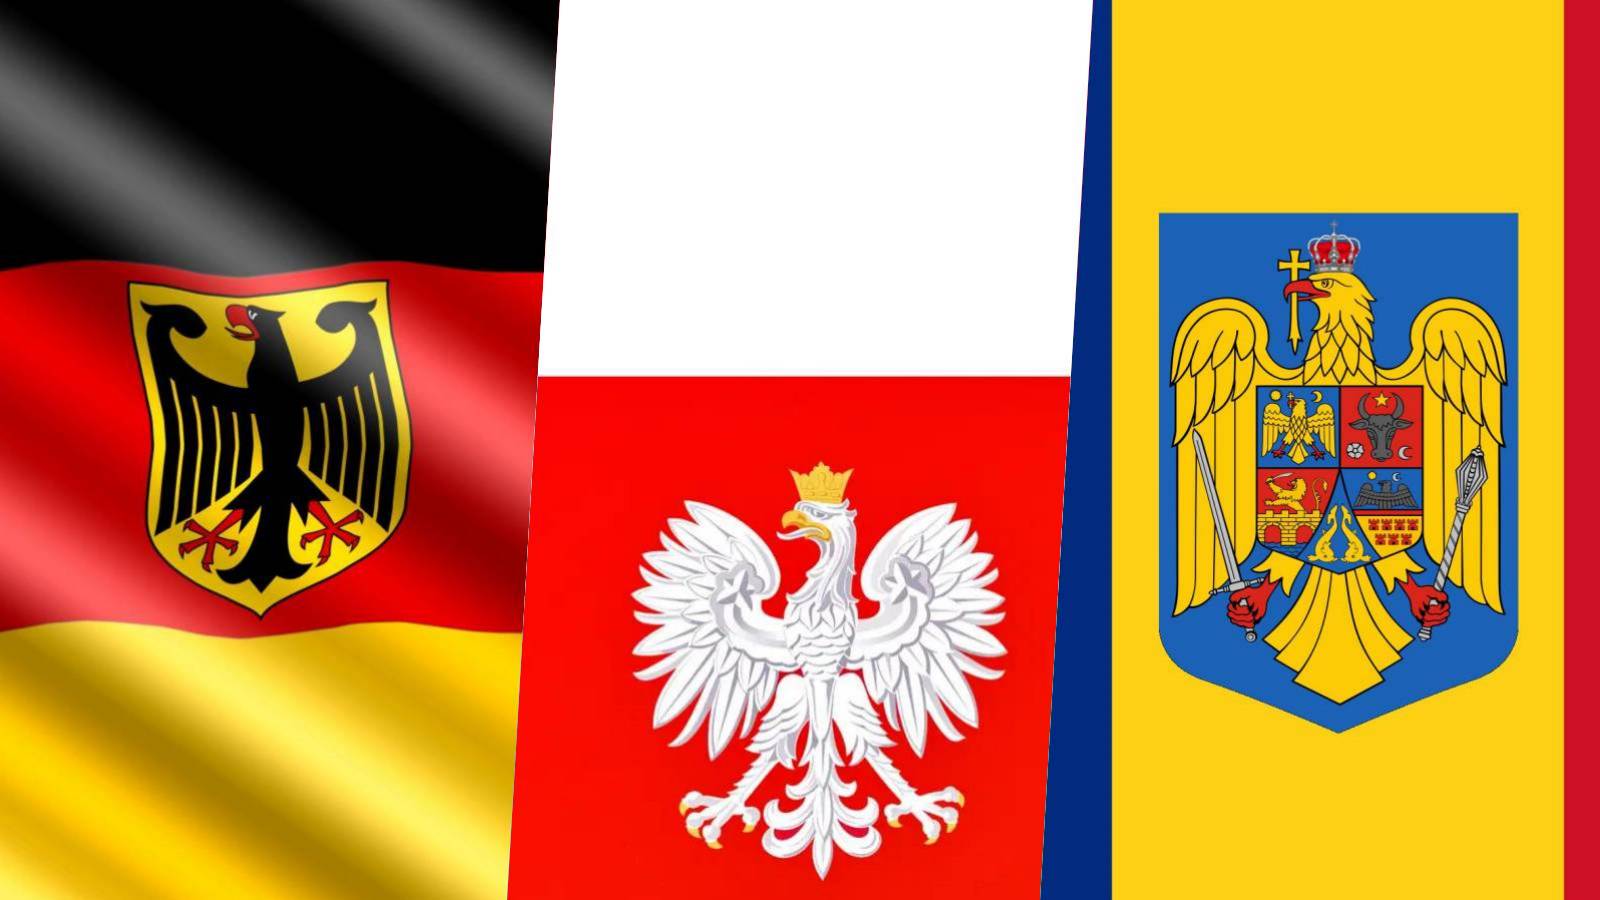 Germania Polonia Anunta Deciziile Oficiale ULTIM MOMENT luate Scholz Tusk Ajutand Aderarea Romaniei Schengen